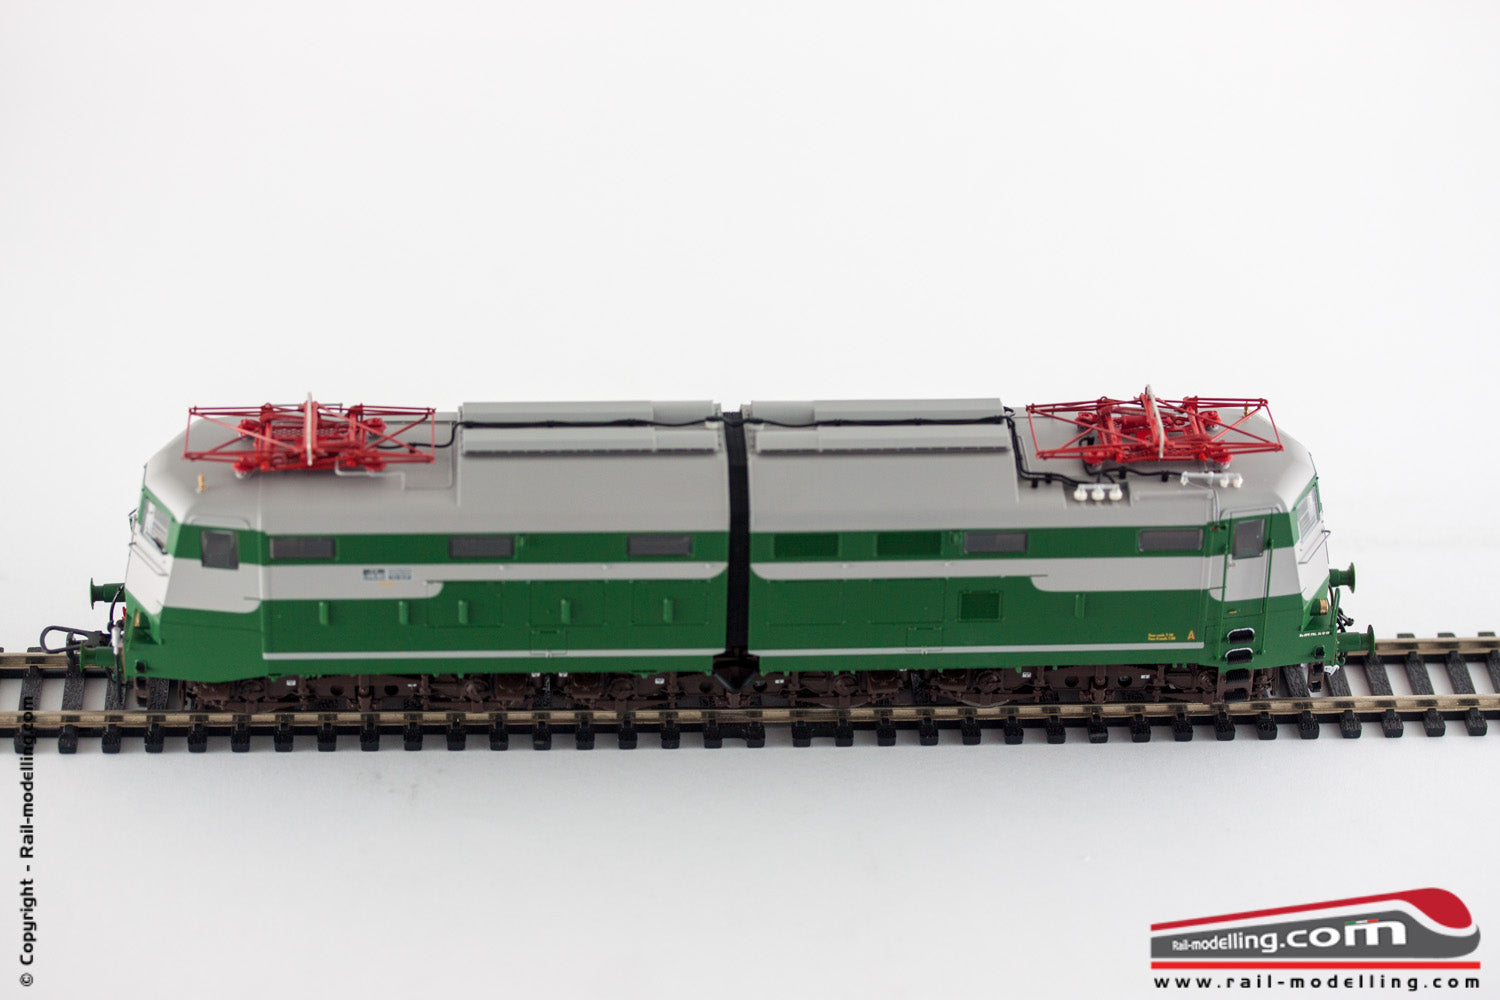 LE MODELS LE20653 - H0 1:87 - Locomotiva elettrica FS E 646 002 livrea grigio nebbia / verde fregio FS sperimentale